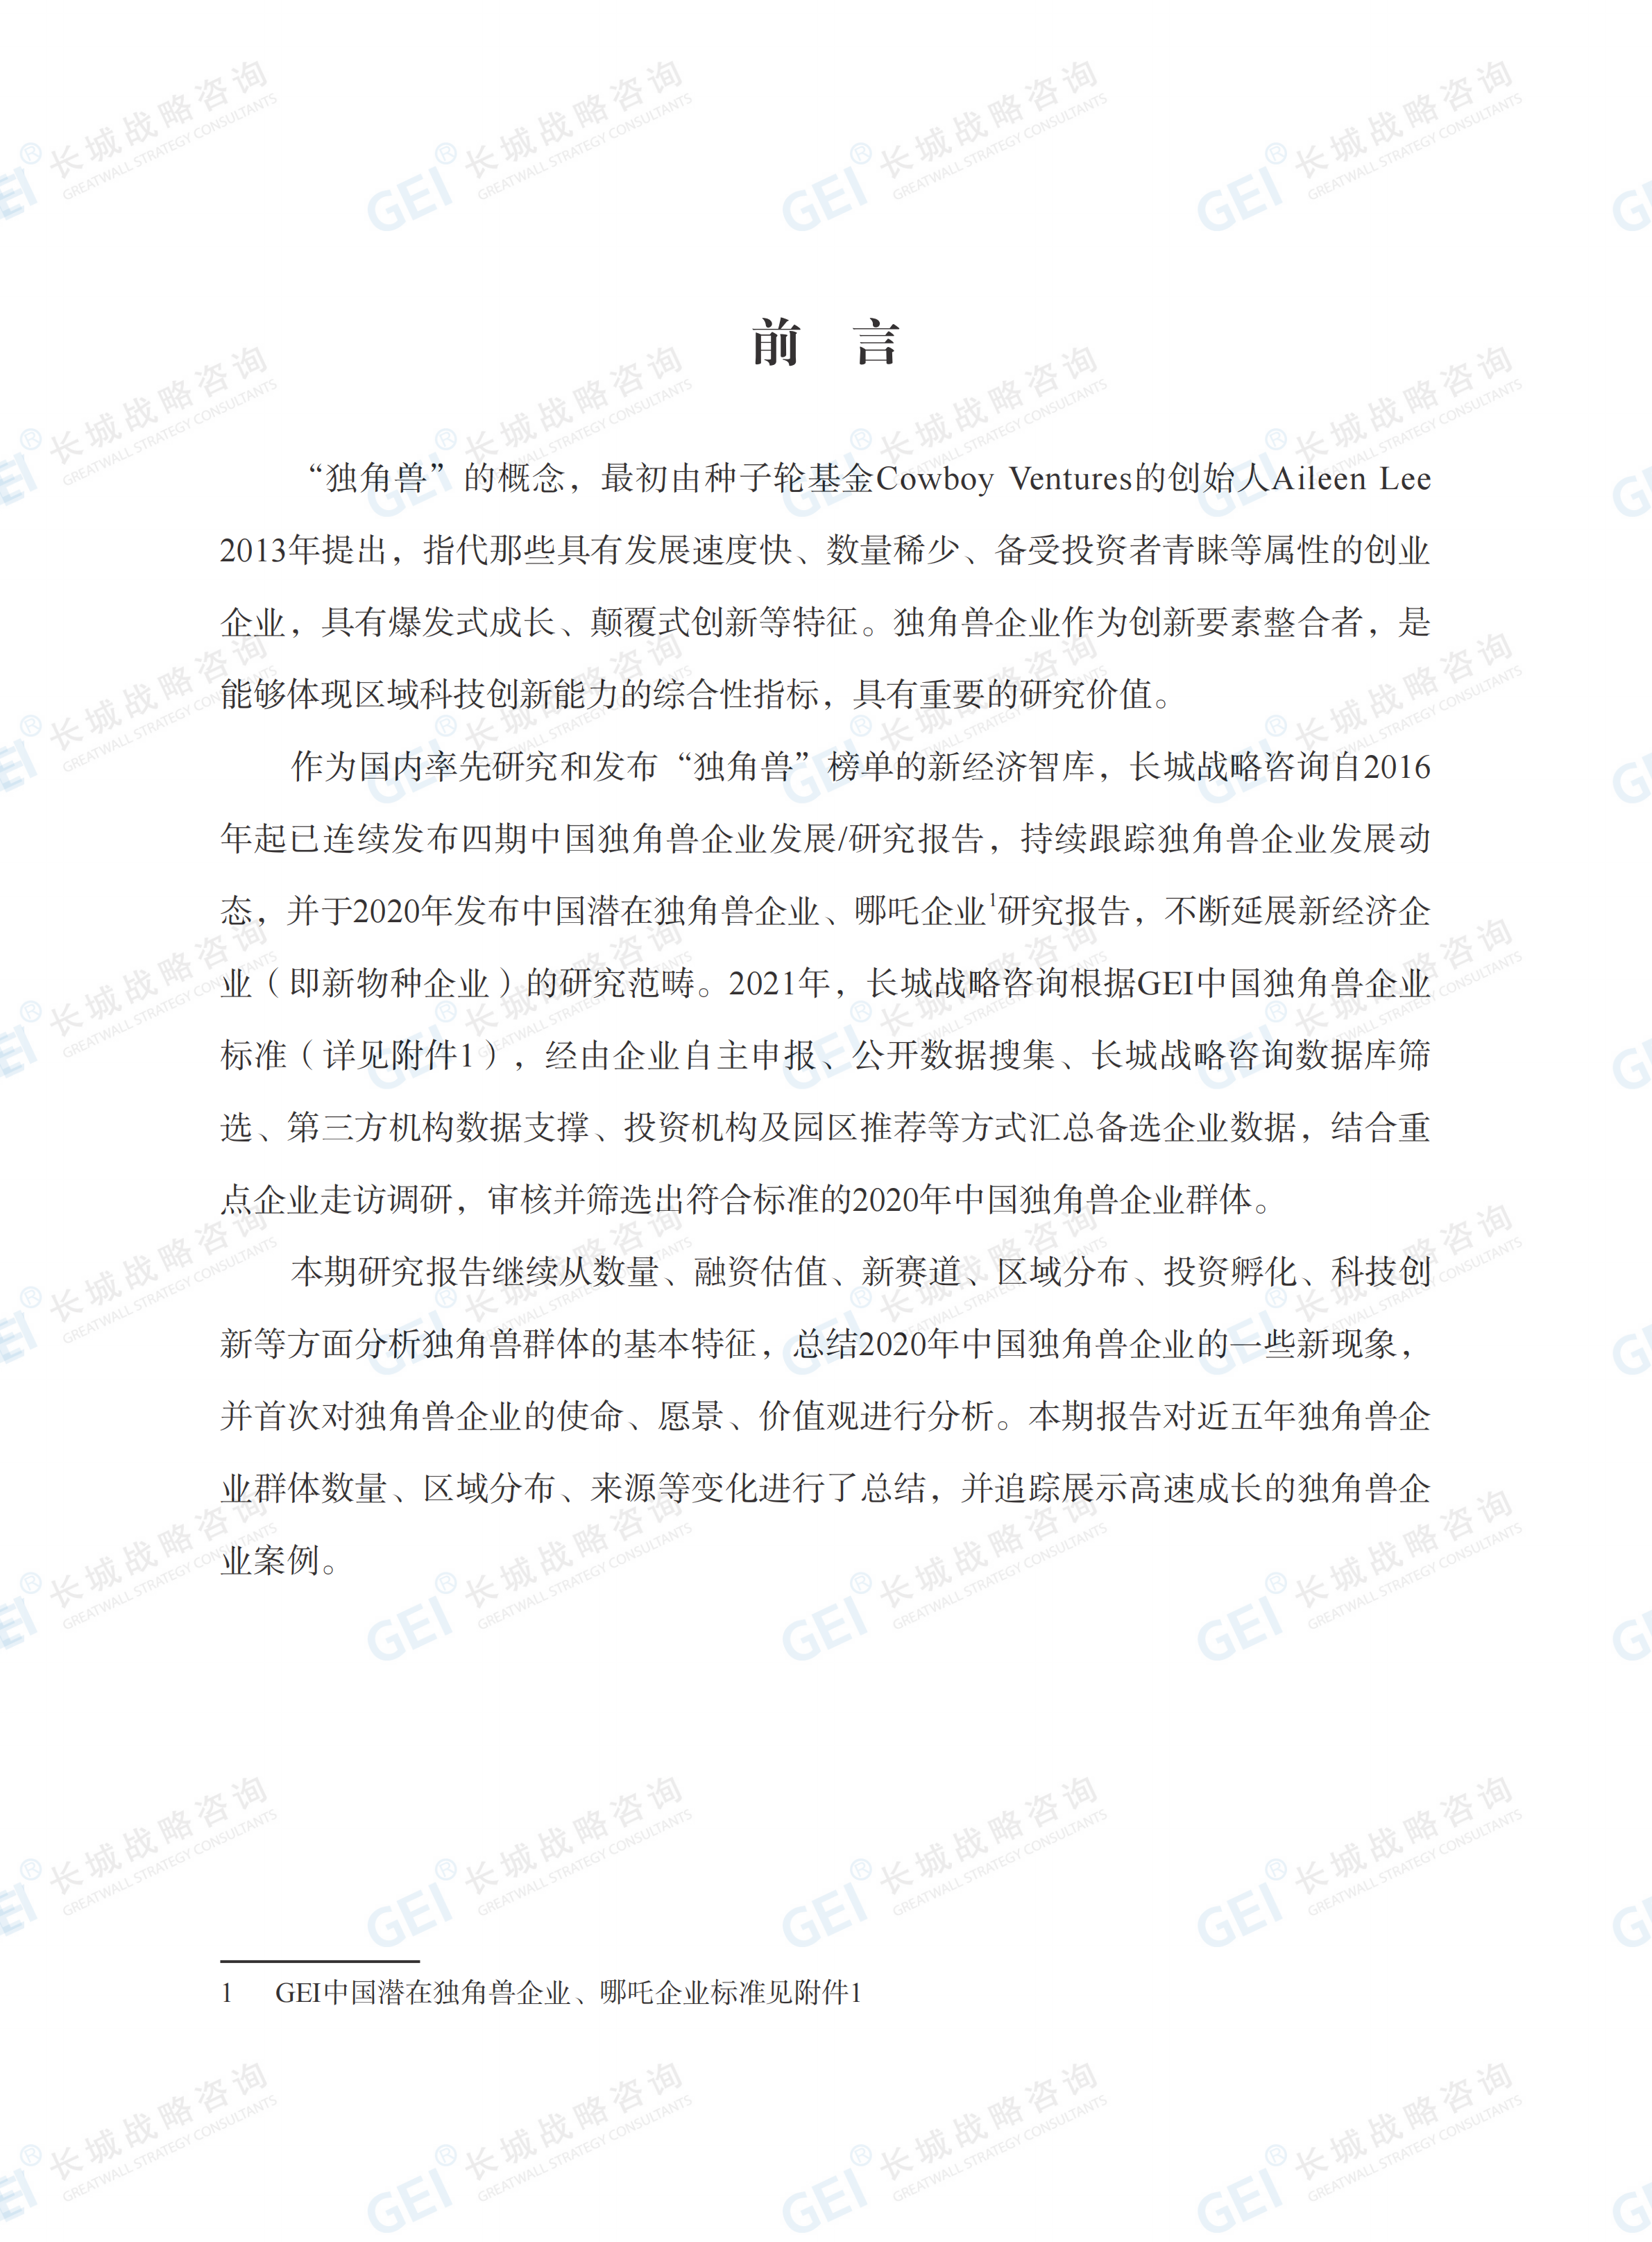 中国独角兽企业研究报告2021-水印(1)_03.png